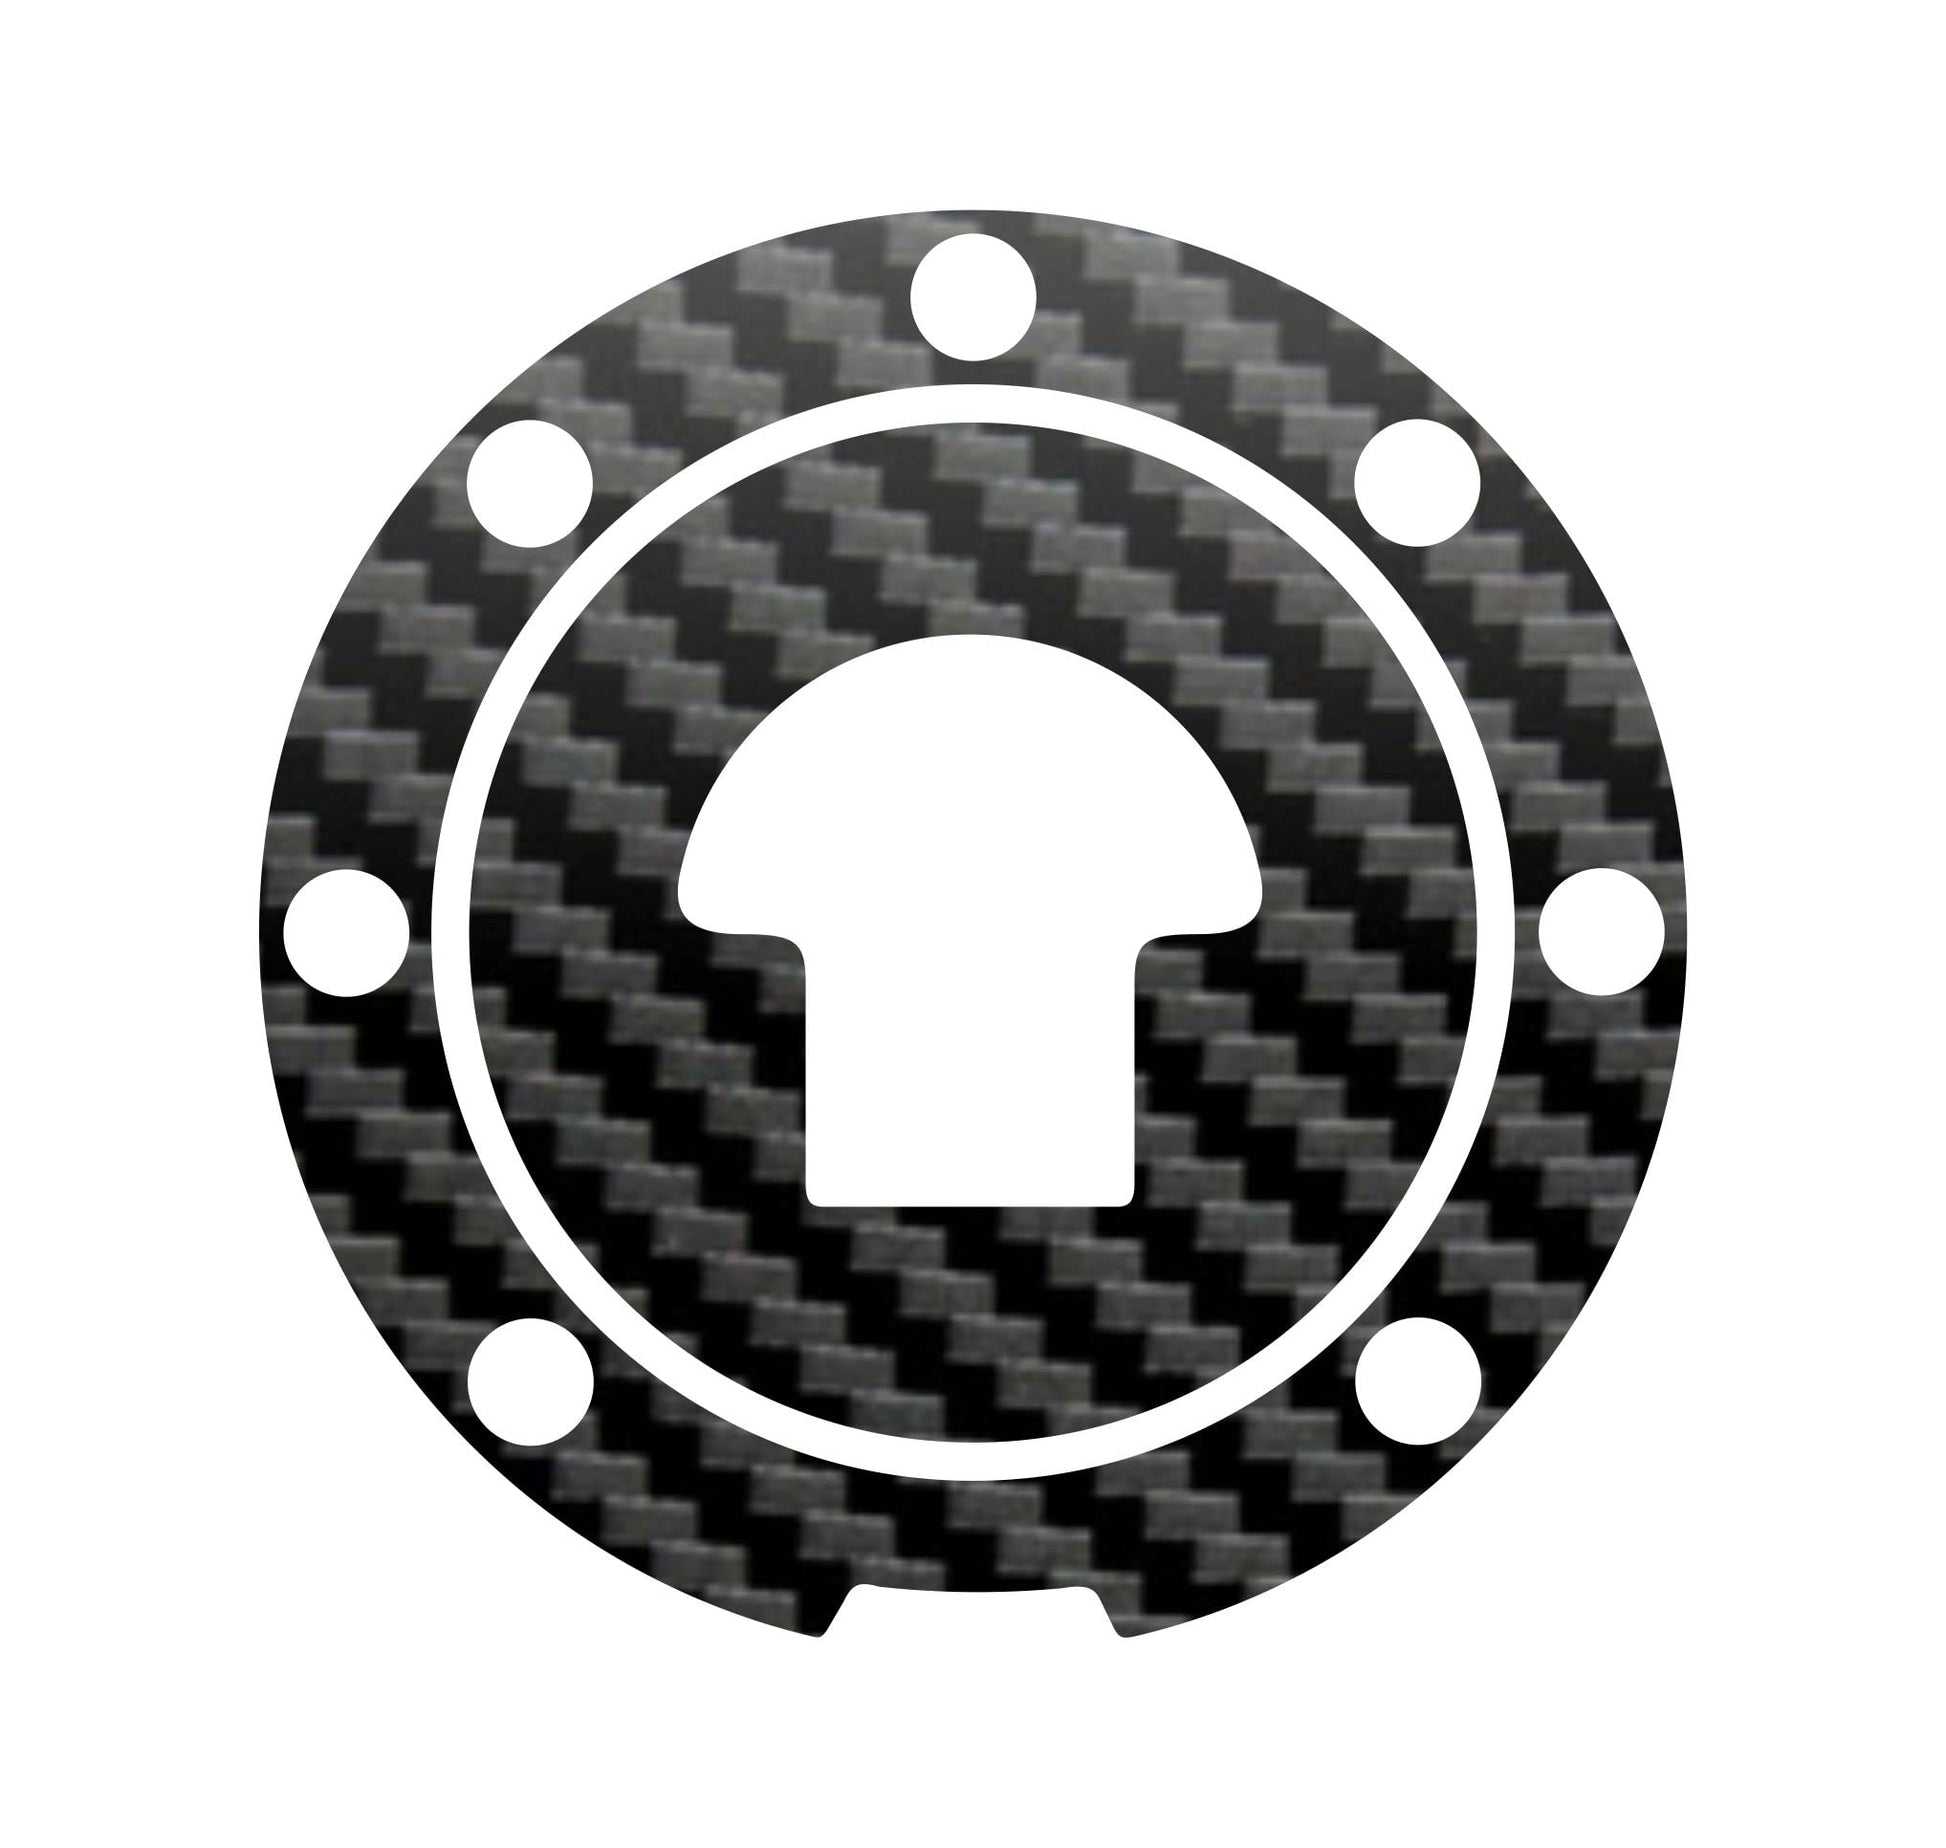 DualColorStampe Adesivo protezione tappo serbatoio compatibile con HONDA CBR 1000RR (2004-2012) carbonio moto M0189 a €9.99 solo da DualColorStampe